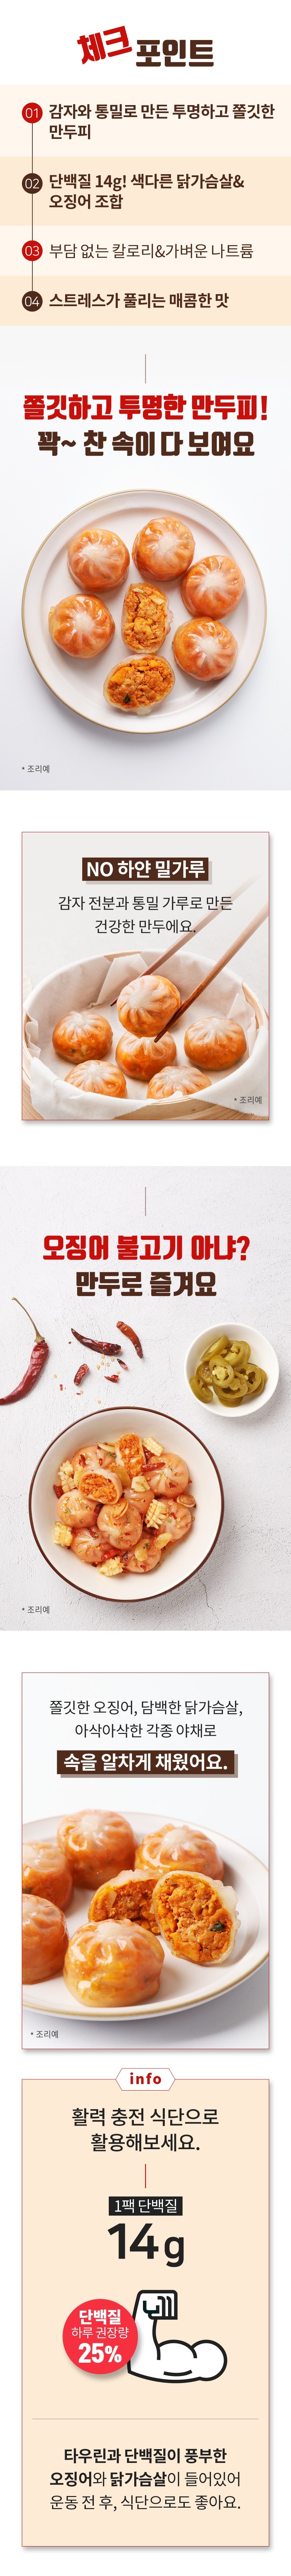 닭신 투명피 만두 매콤오징어 체험단 모집 (06.10~06.22)